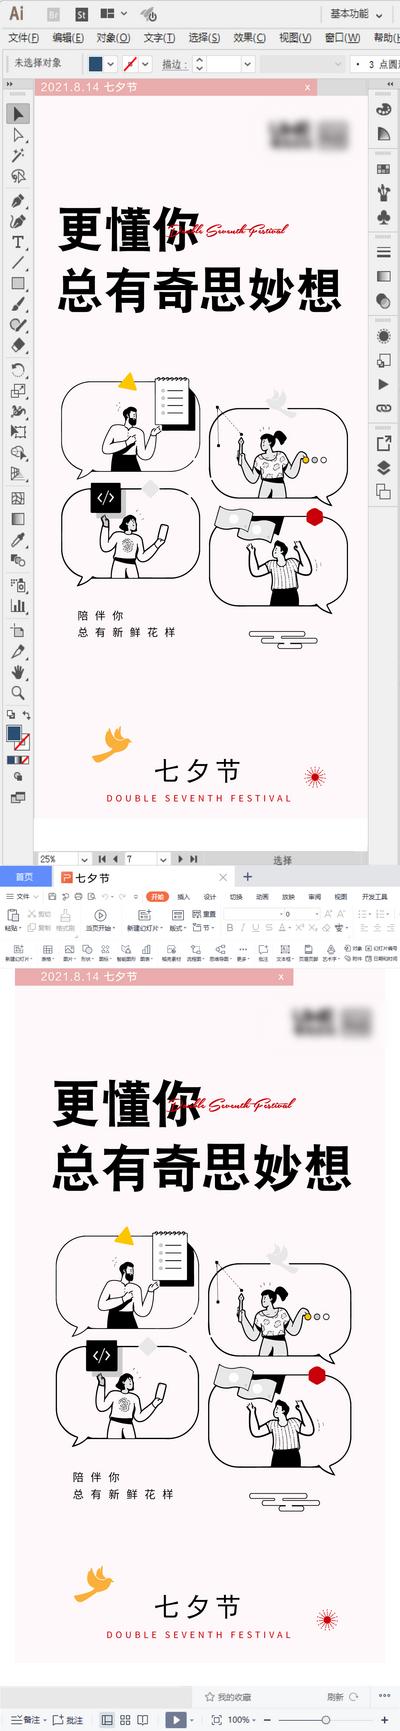 南门网 海报 七夕 情人节 中国传统节日 创意 办公工具 界面